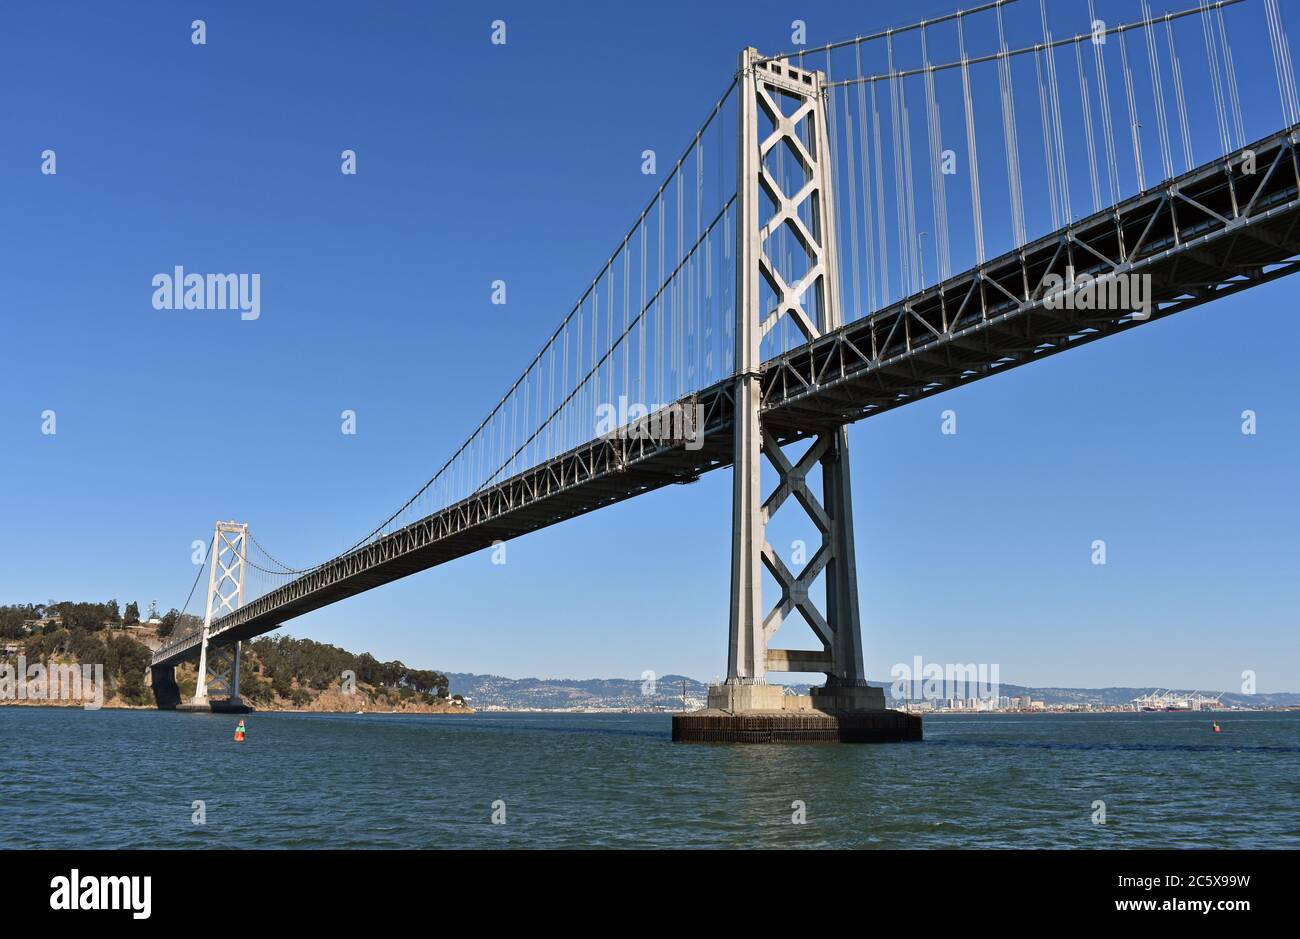 De San Francisco à Oakland Bay Bridge et Treasure Island. Horizon d'Oakland City au loin derrière le pont suspendu gris. Californie. Banque D'Images